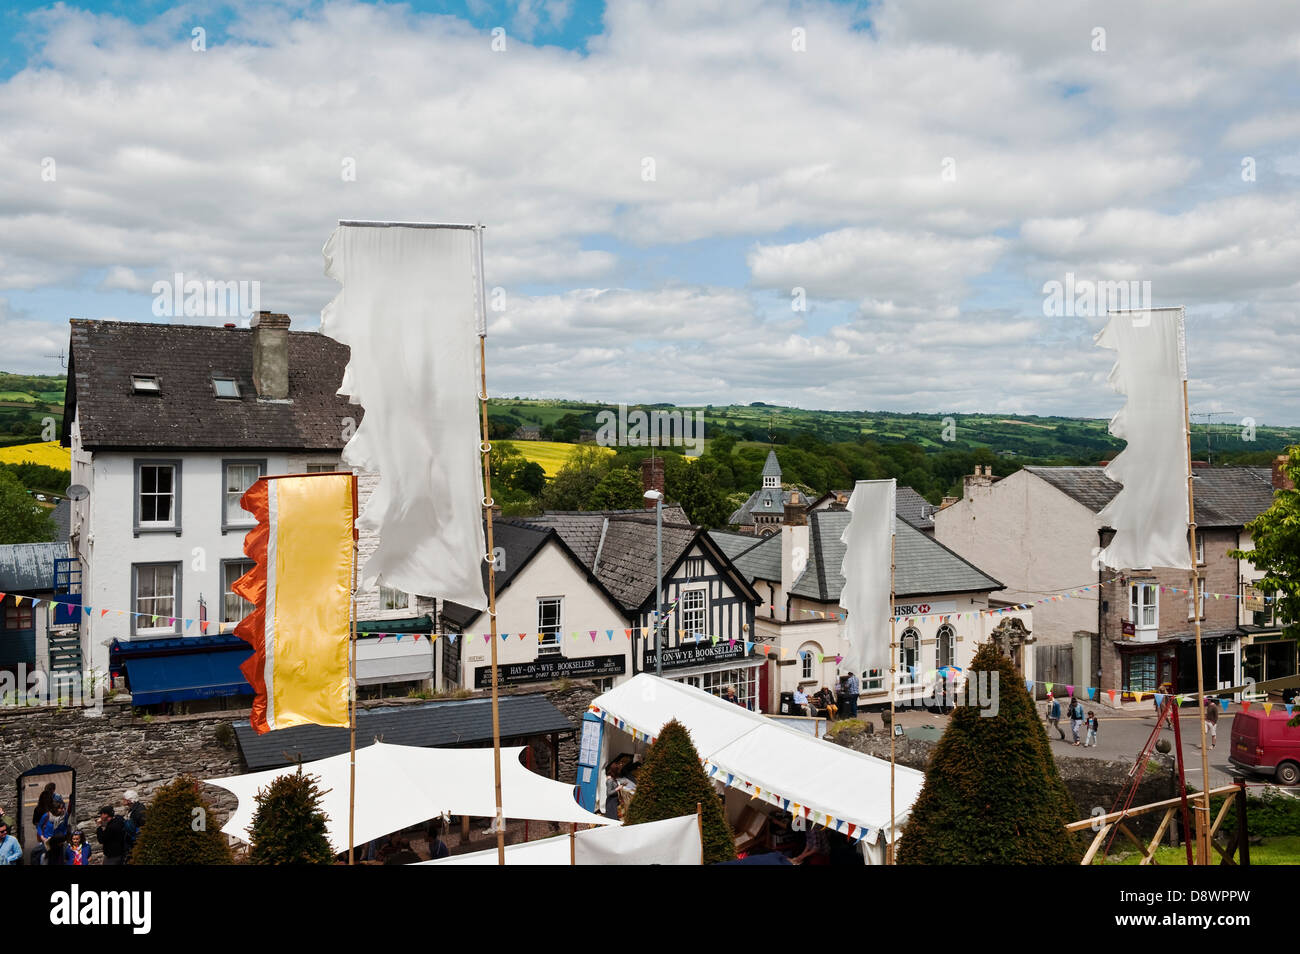 El centro de heno-on-Wye, RU, la ciudad famosa por sus librerías y festival literario, en la frontera entre Inglaterra y Gales Foto de stock